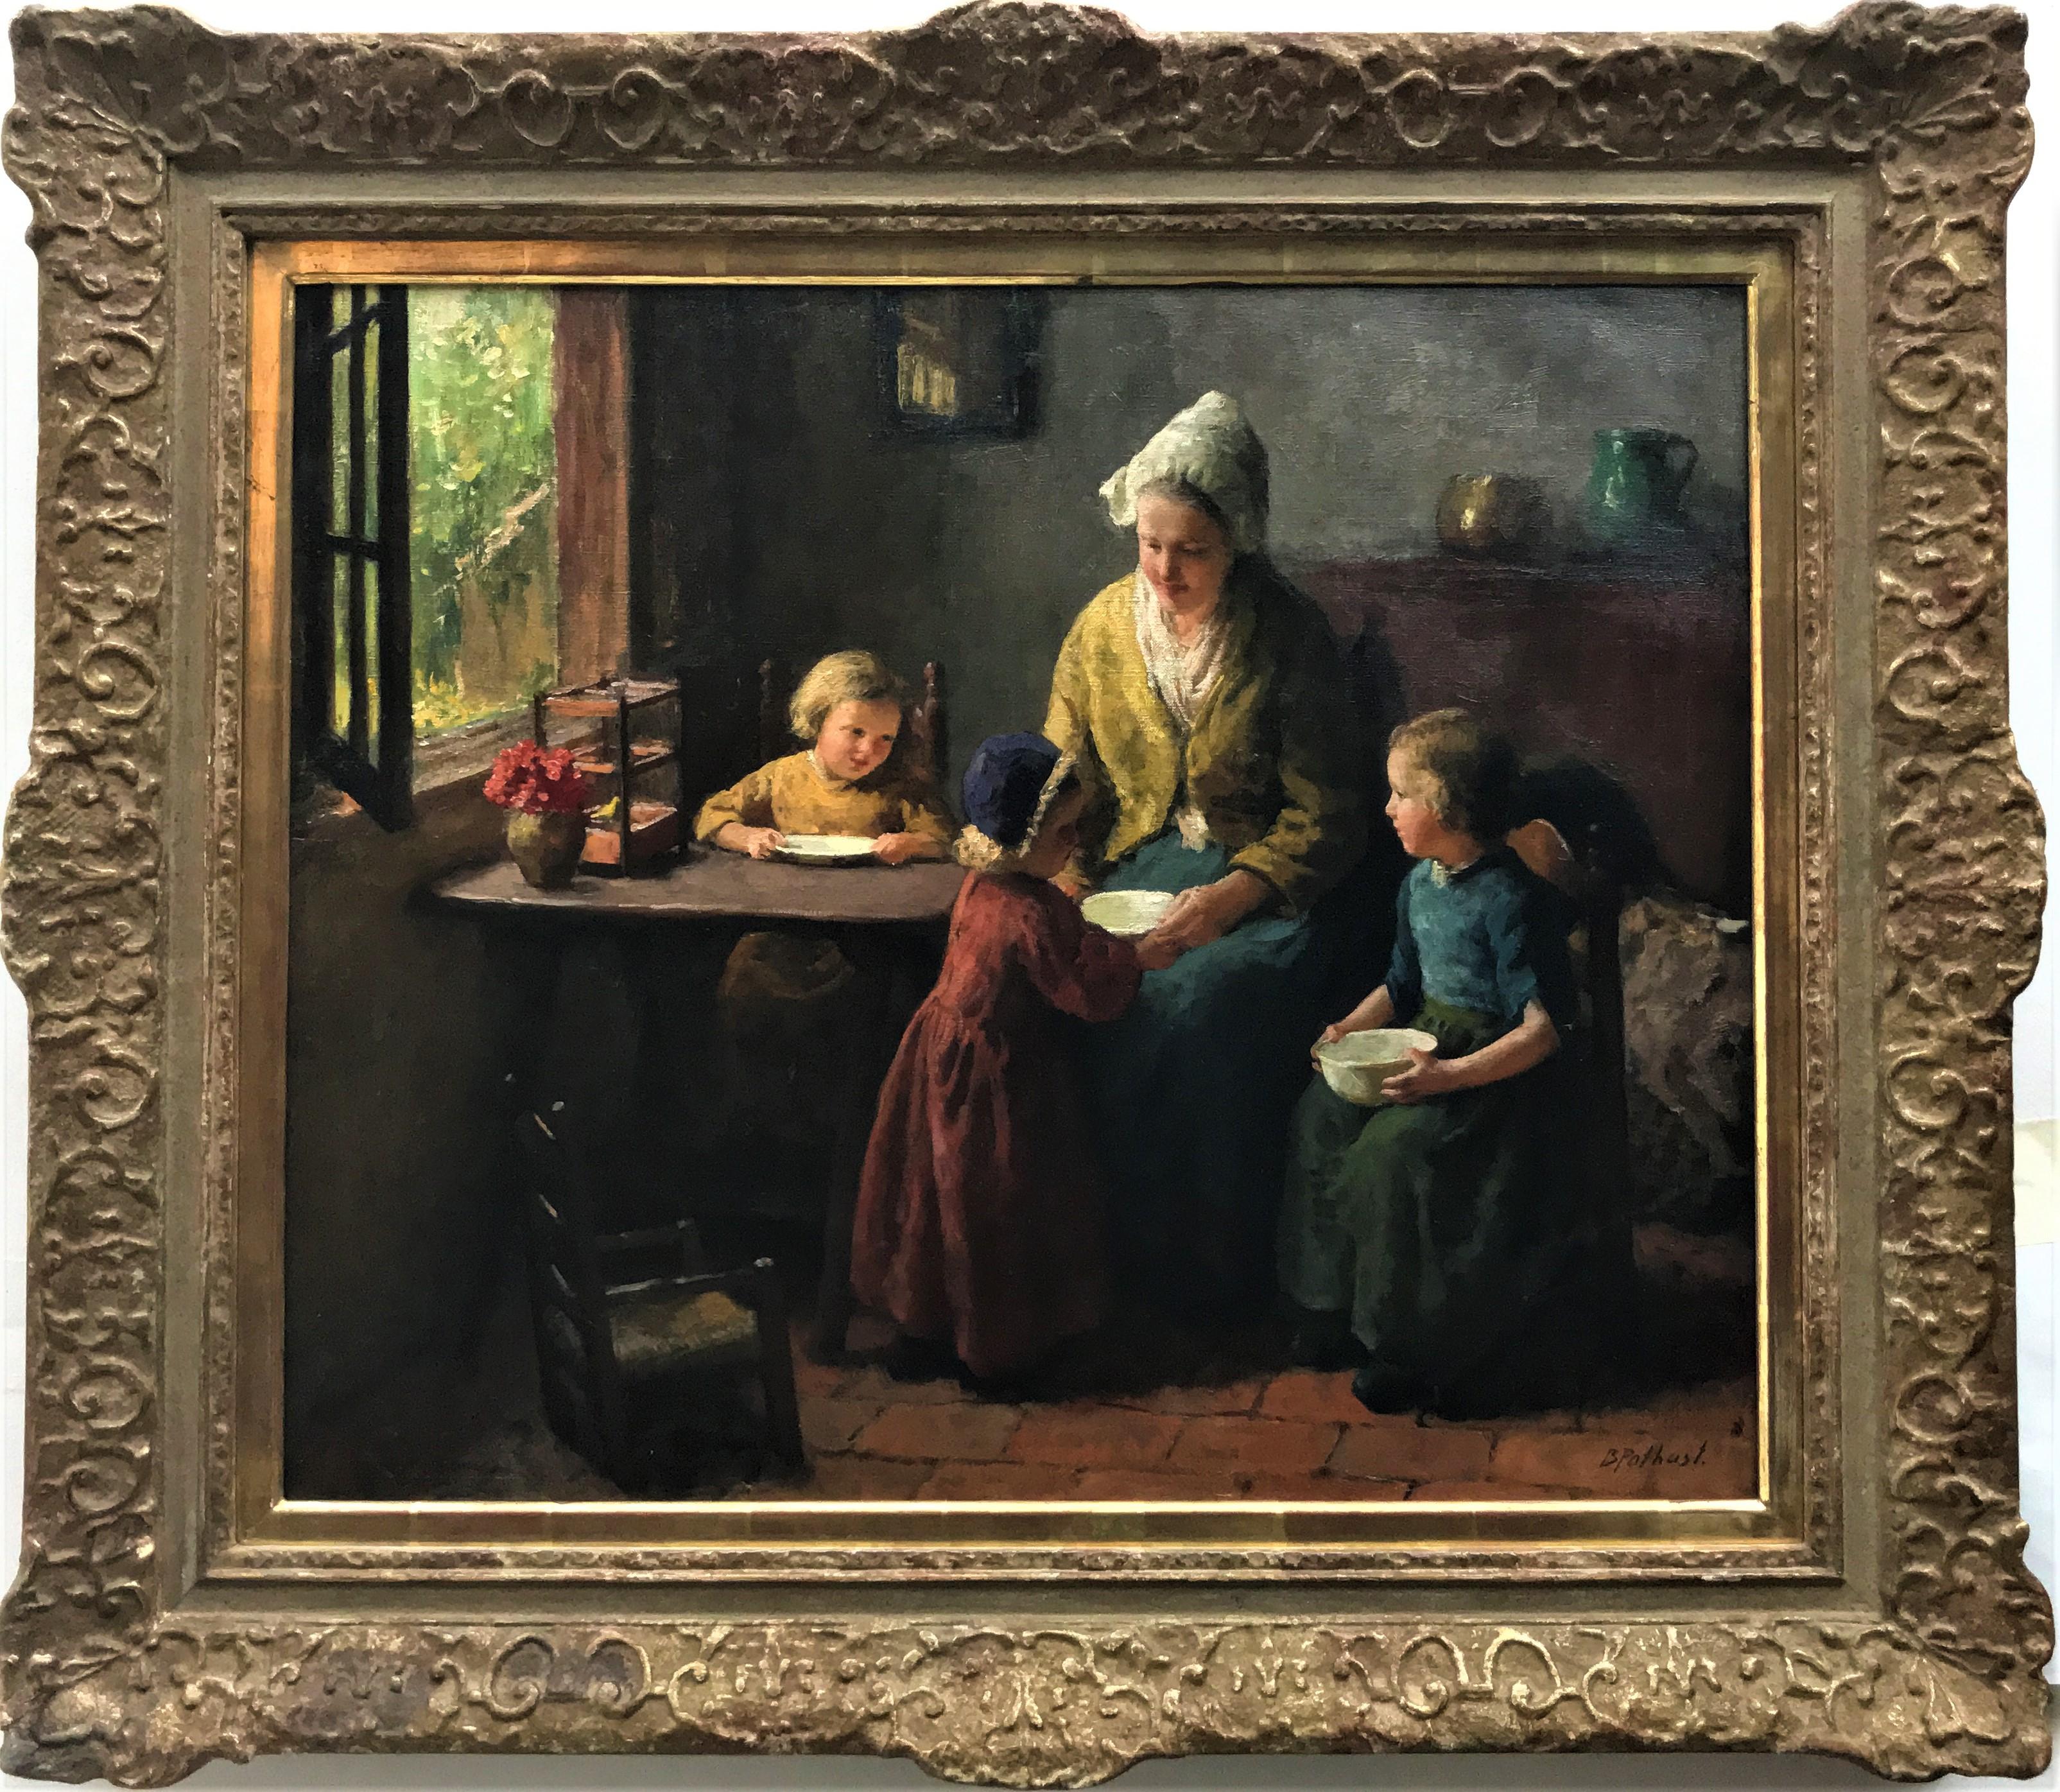 « Mère et enfants, scène de famille familiale d'intérieur néerlandaise, huile sur toile, vers 1930 - Painting de Bernard Pothast